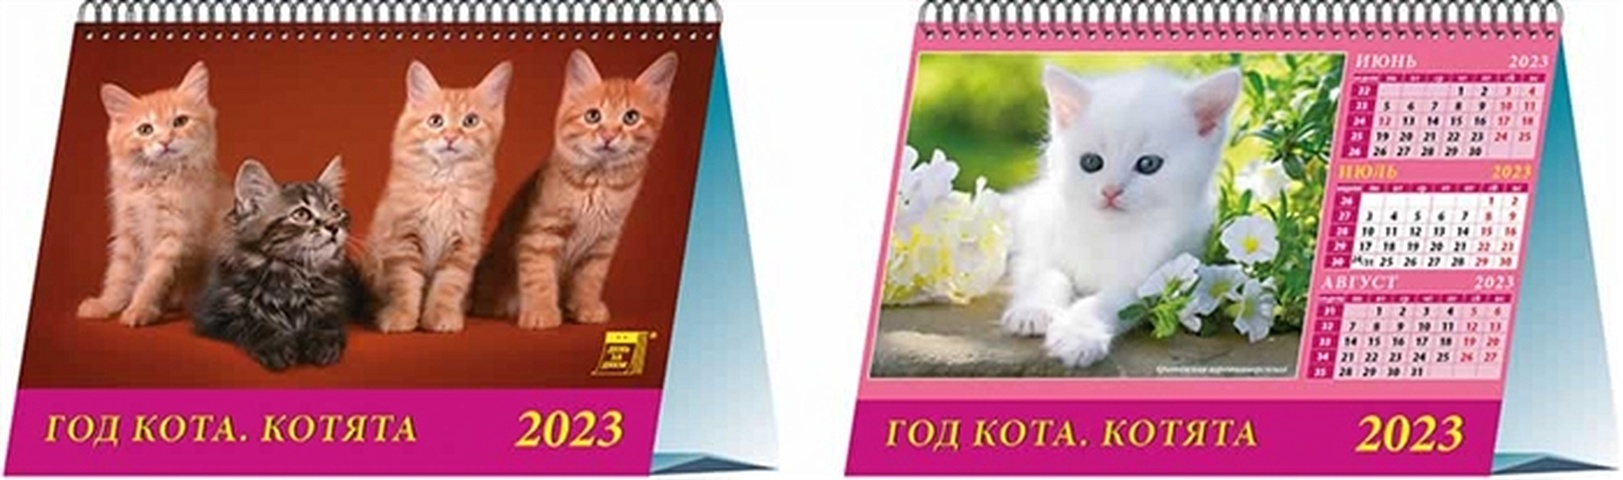 Календарь настольный на 2023 год Год кота. Котята